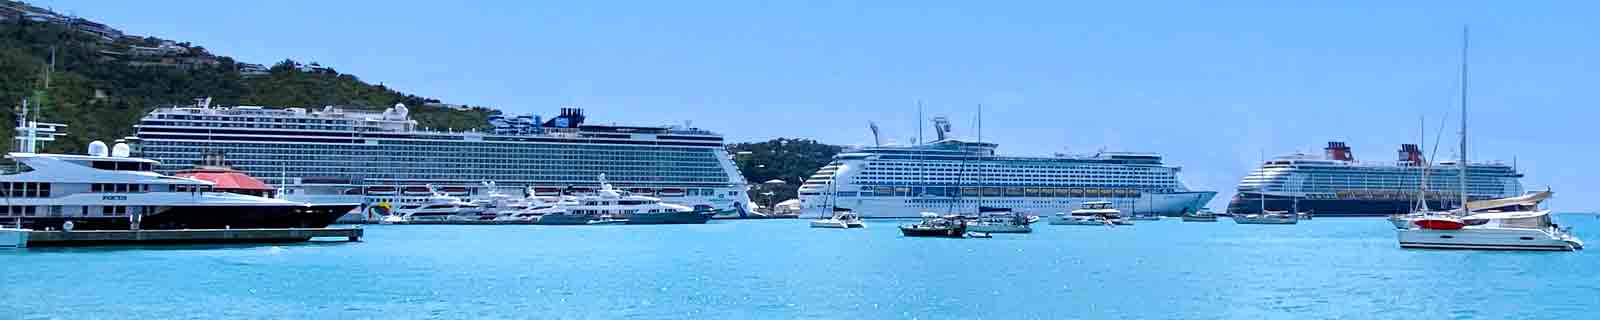 Burjuman mall - CRUISE CROCODILE: cruise dock, cruise port